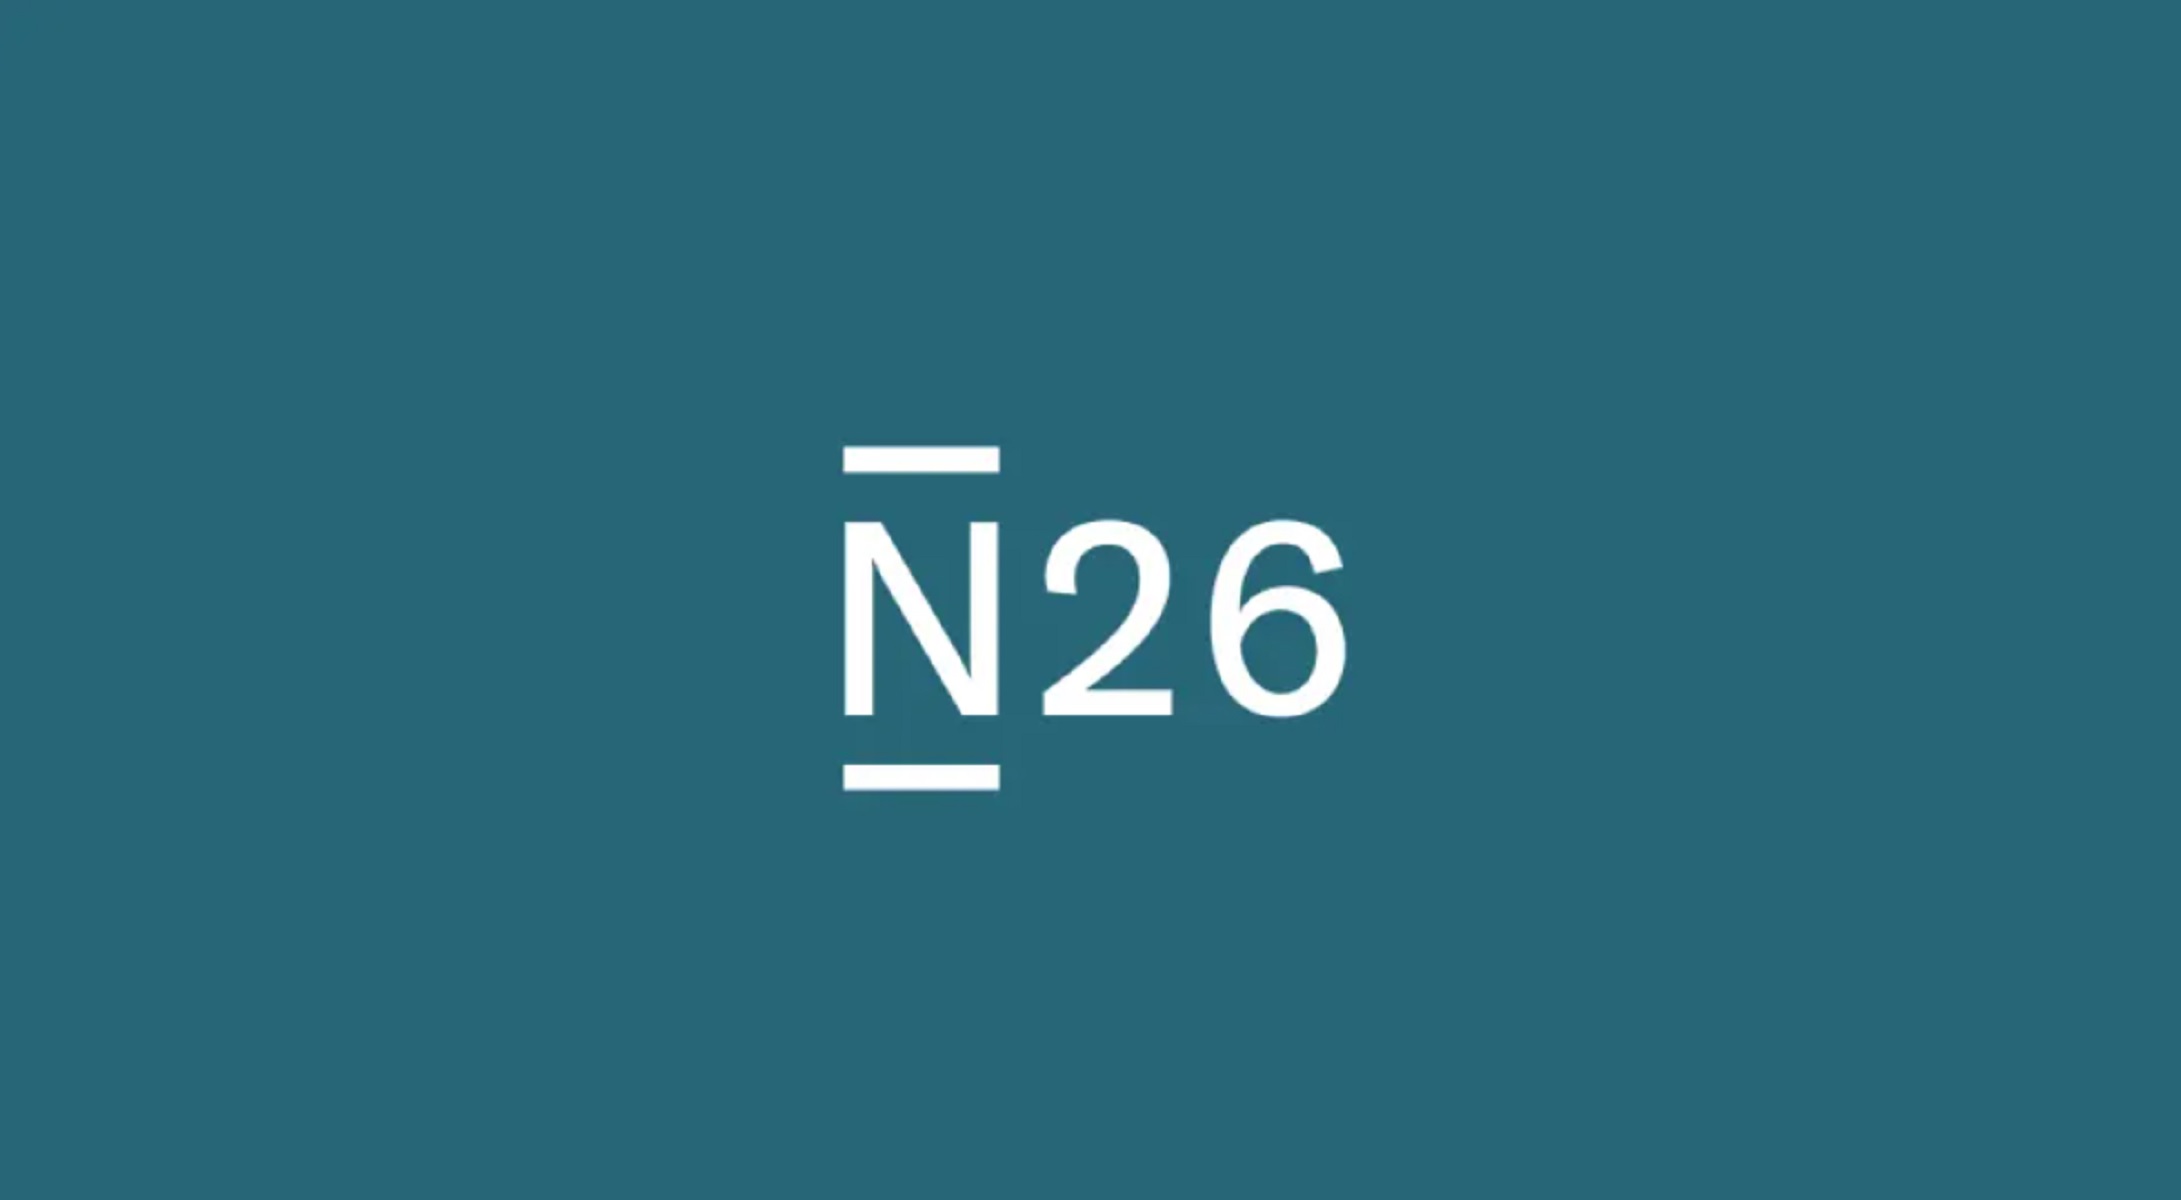 Como funciona o N26 Bank? Saiba tudo